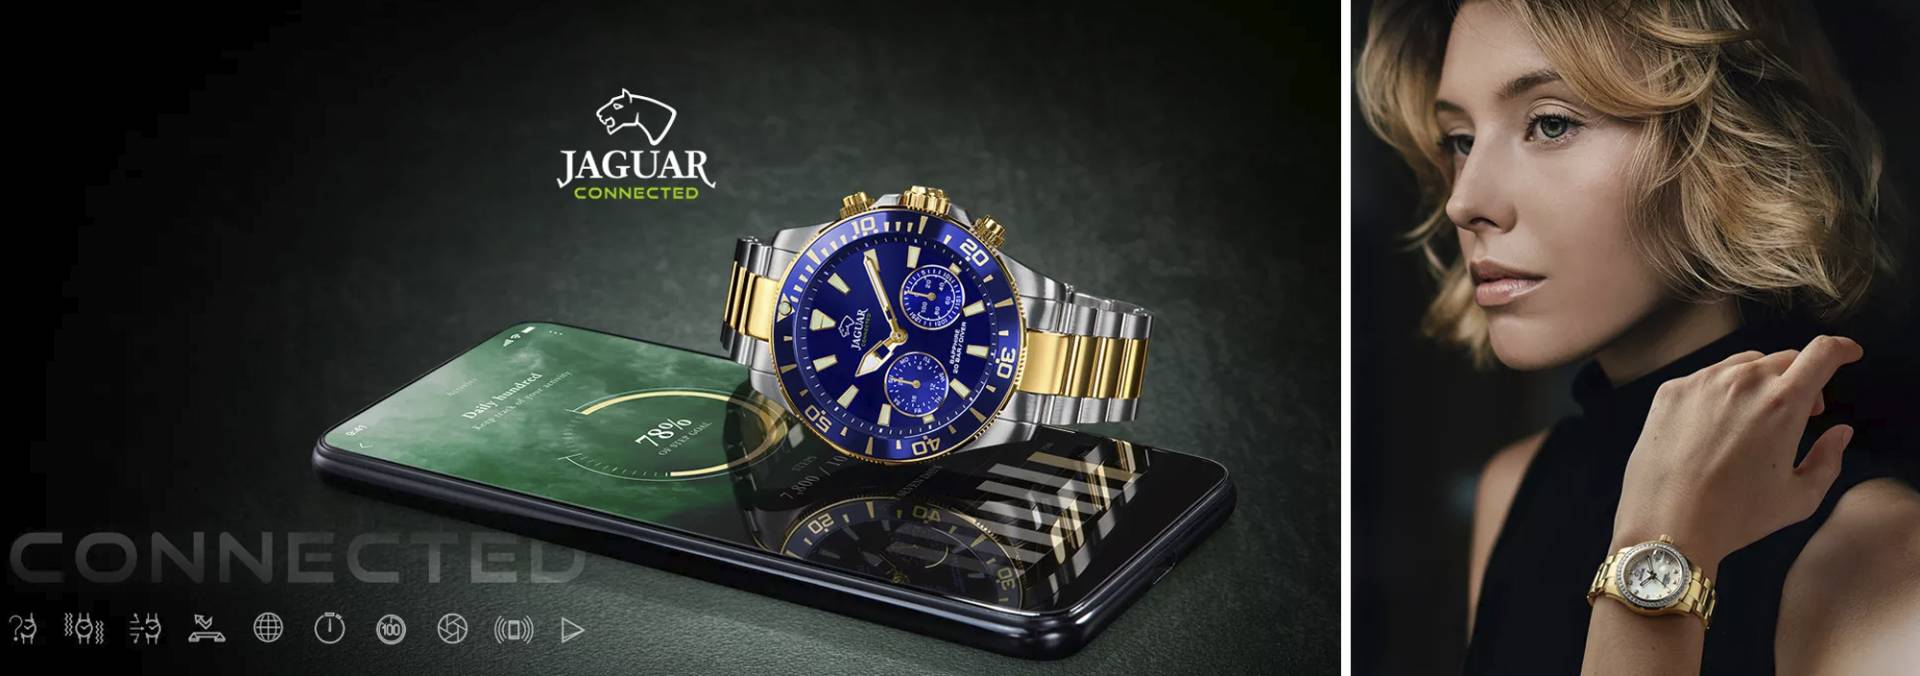 Reloj Jaguar Executive Diver J875/1 Cronografo - Joyería Carmen Villa